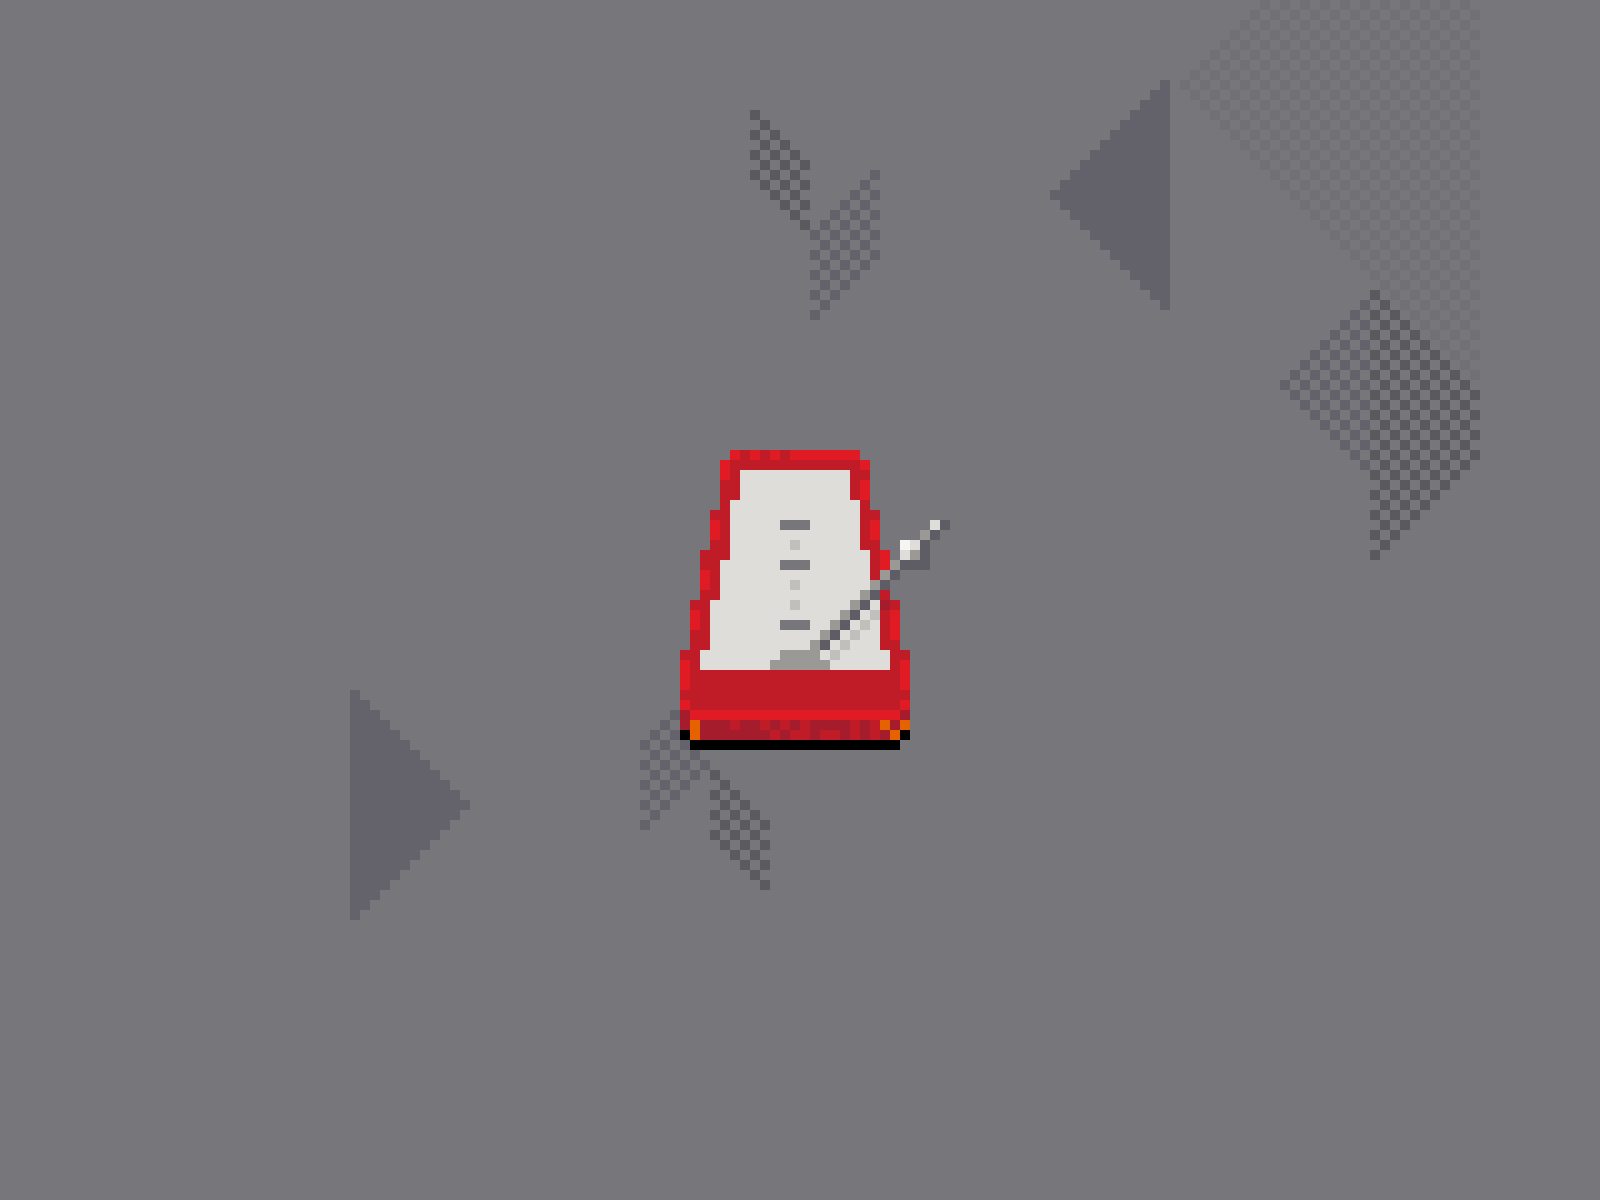 Metronome design icon pixaki pixelart